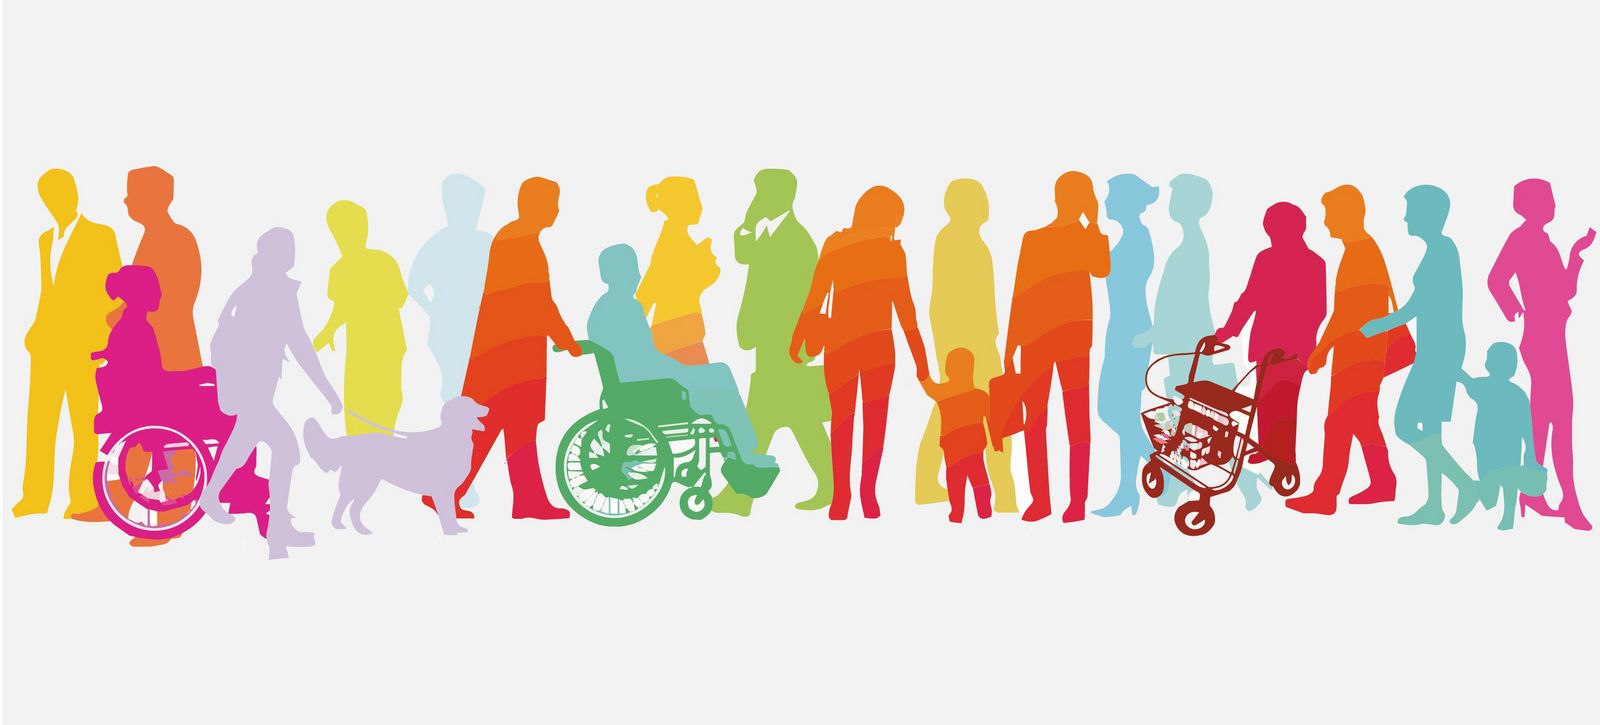 Farbige Illustration einer Menschengruppe von Erwachsenen, Kindern, Rollstuhlfahrern und älteren Menschen